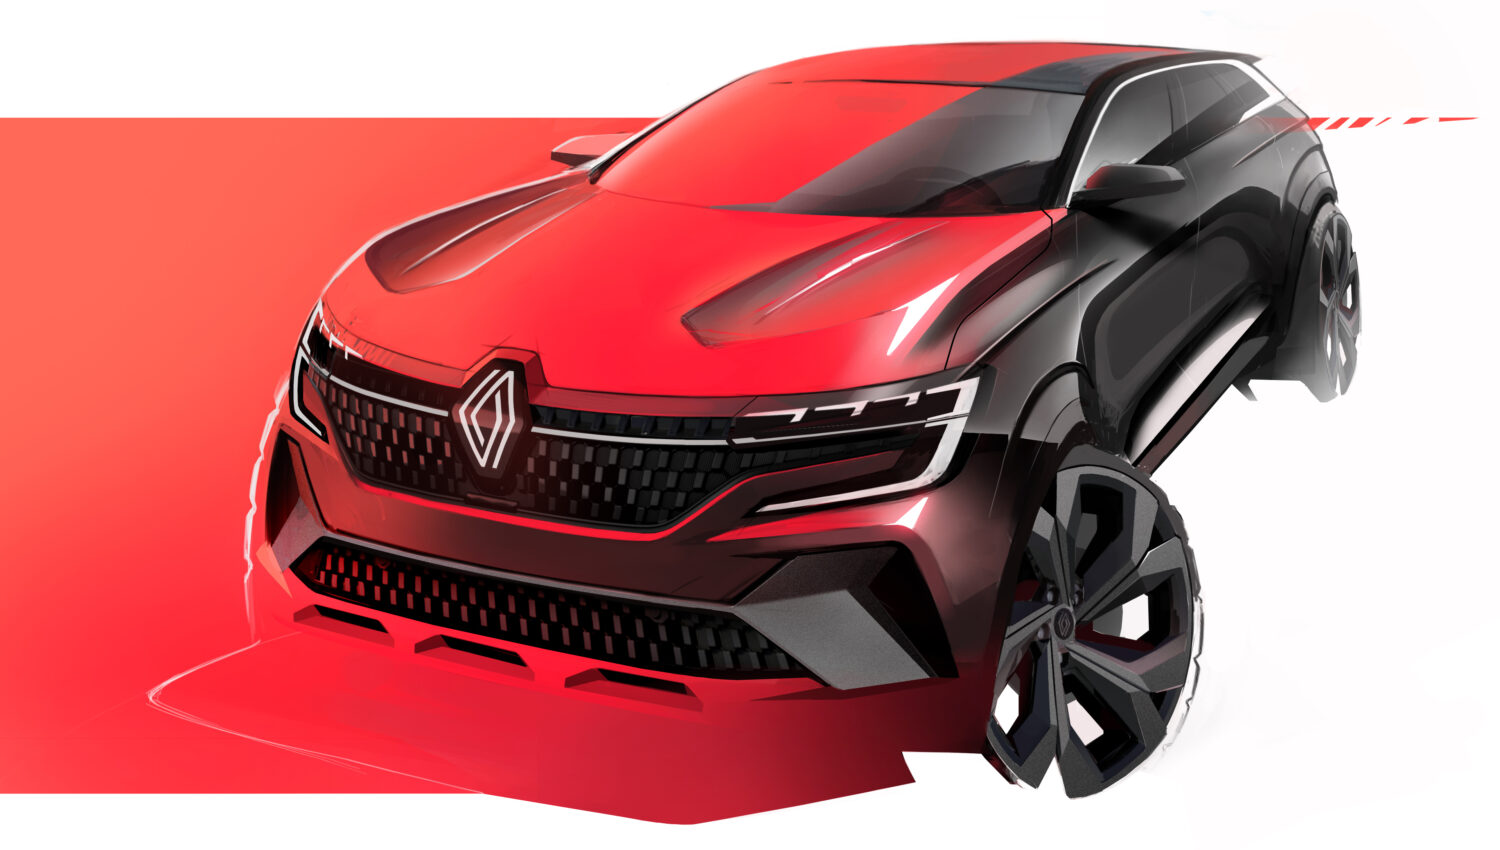 2022 - Nouveau Renault Austral : un SUV athlétique et tech